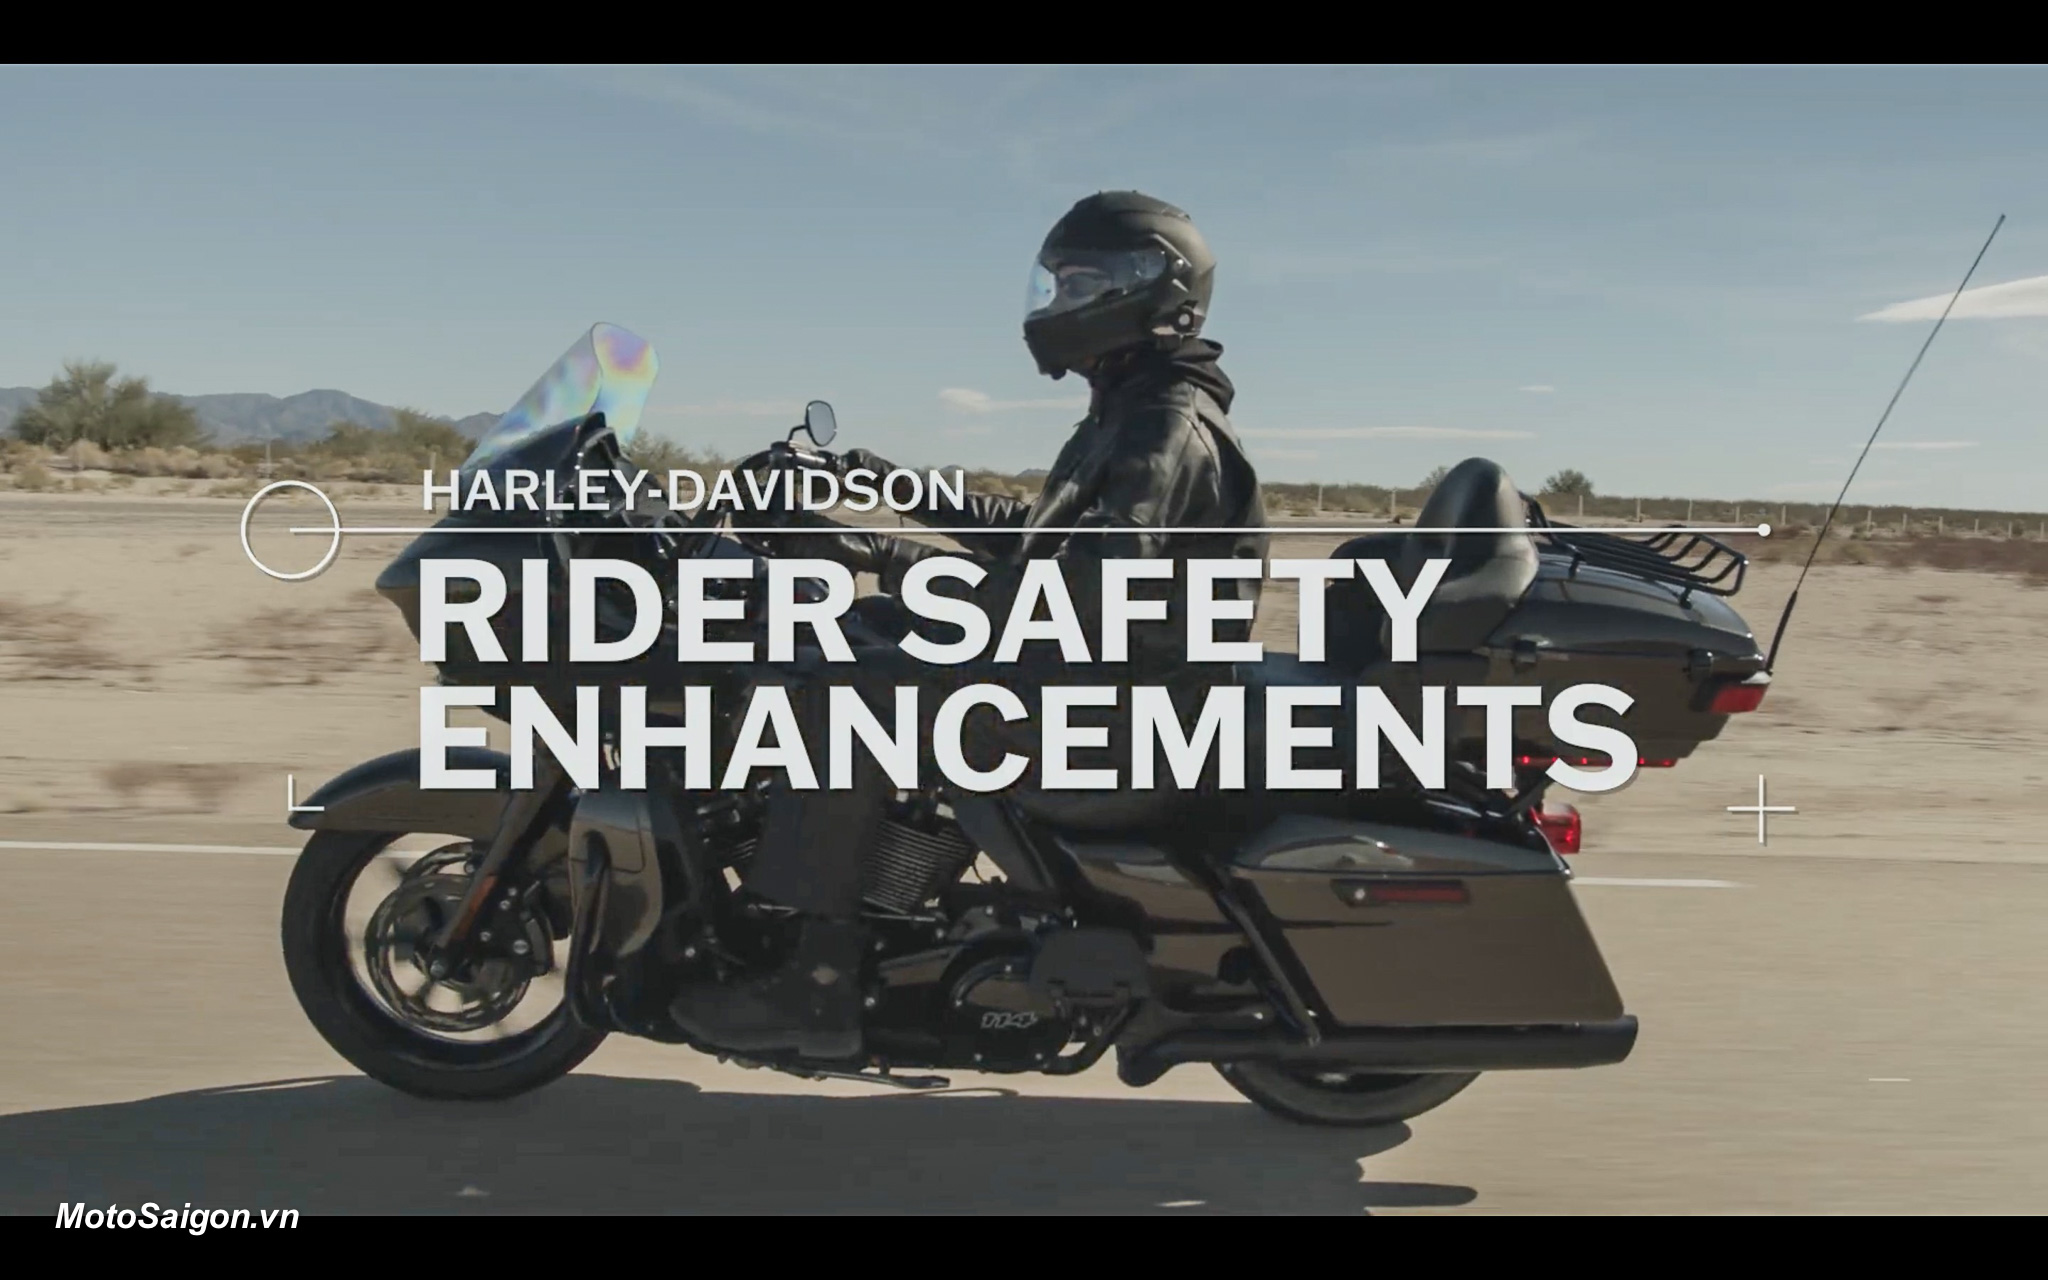 Harley-Davidson Ra Mắt Loạt Công Nghệ Lái Xe An Toàn Rider Safety  Enhancements - Motosaigon